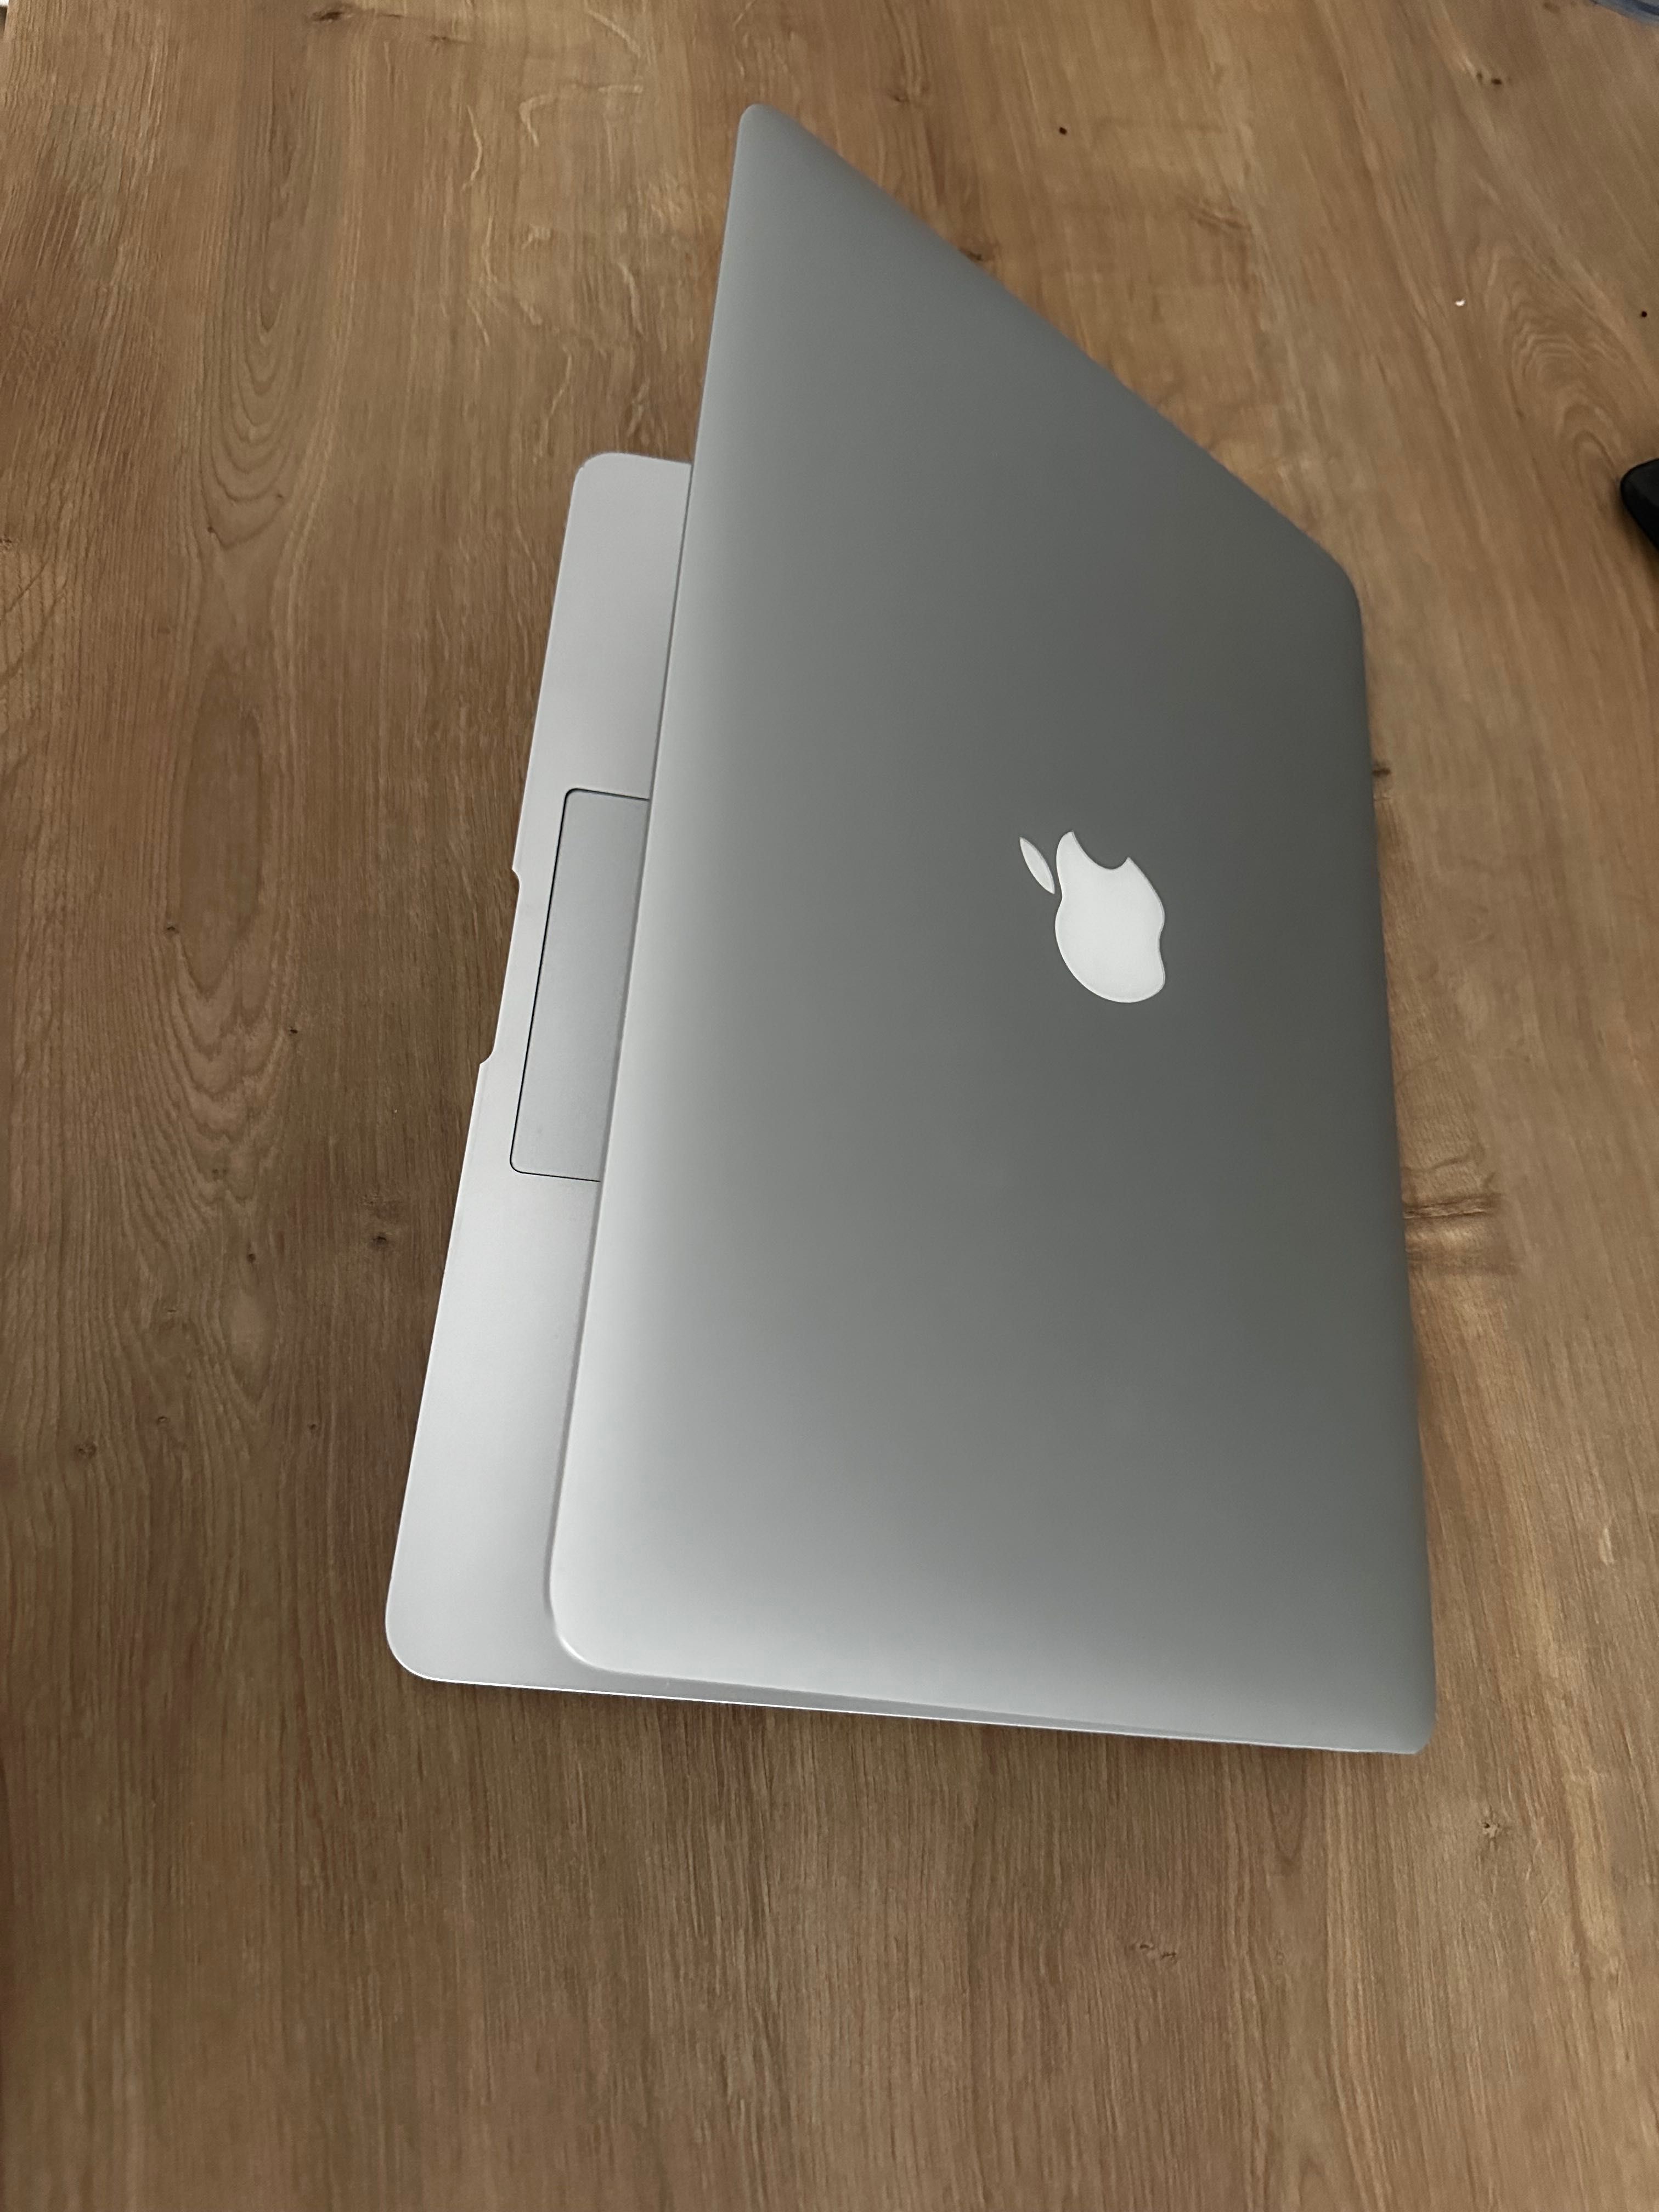 Macbook Air 13 inch, 2017, 128GB, i5